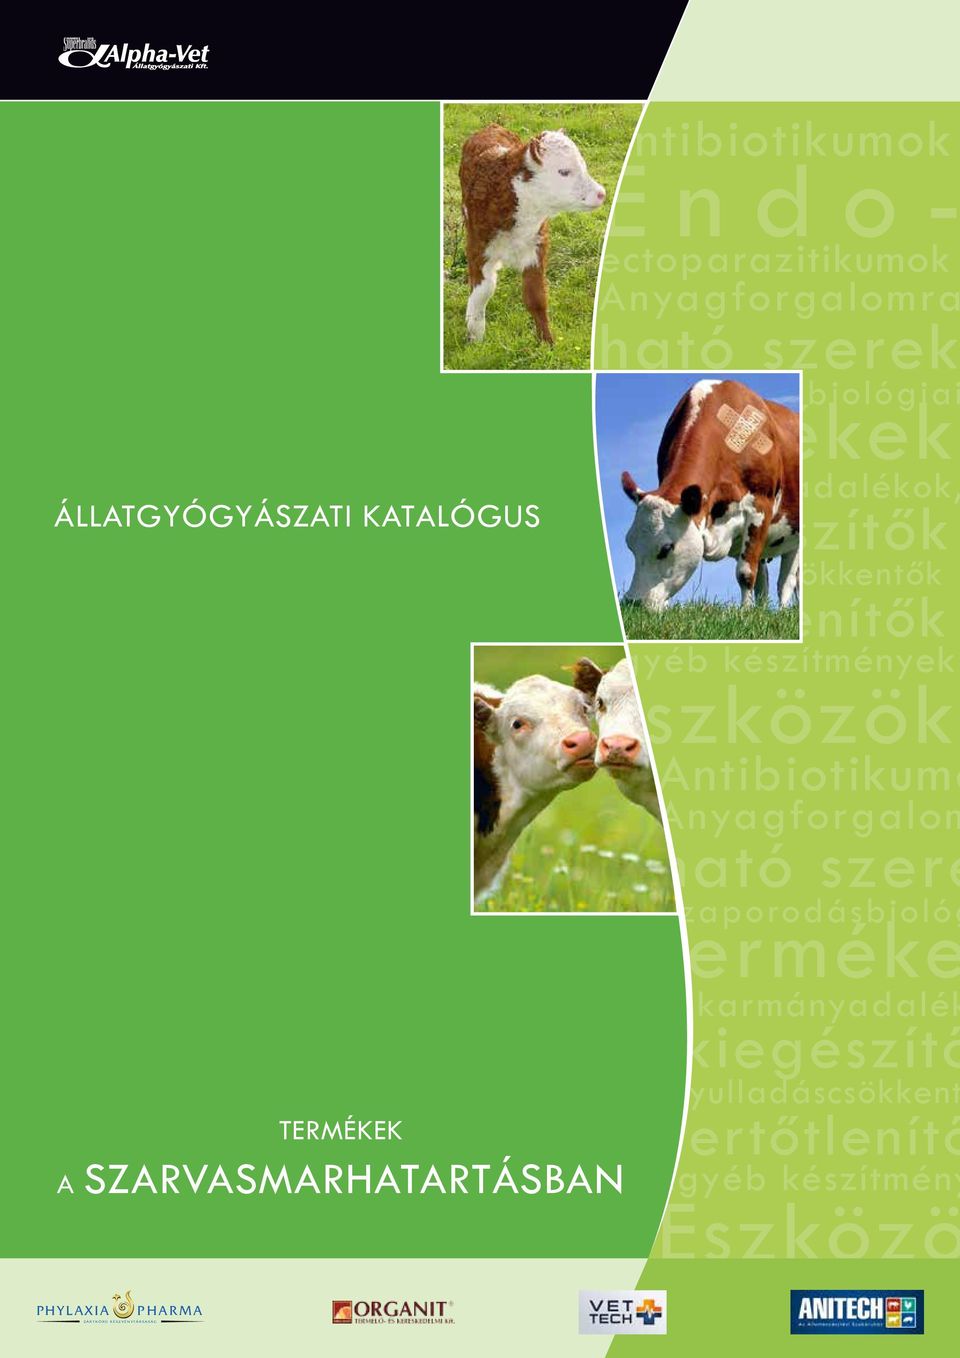 Endoectoparazitikumok - PDF Free Download